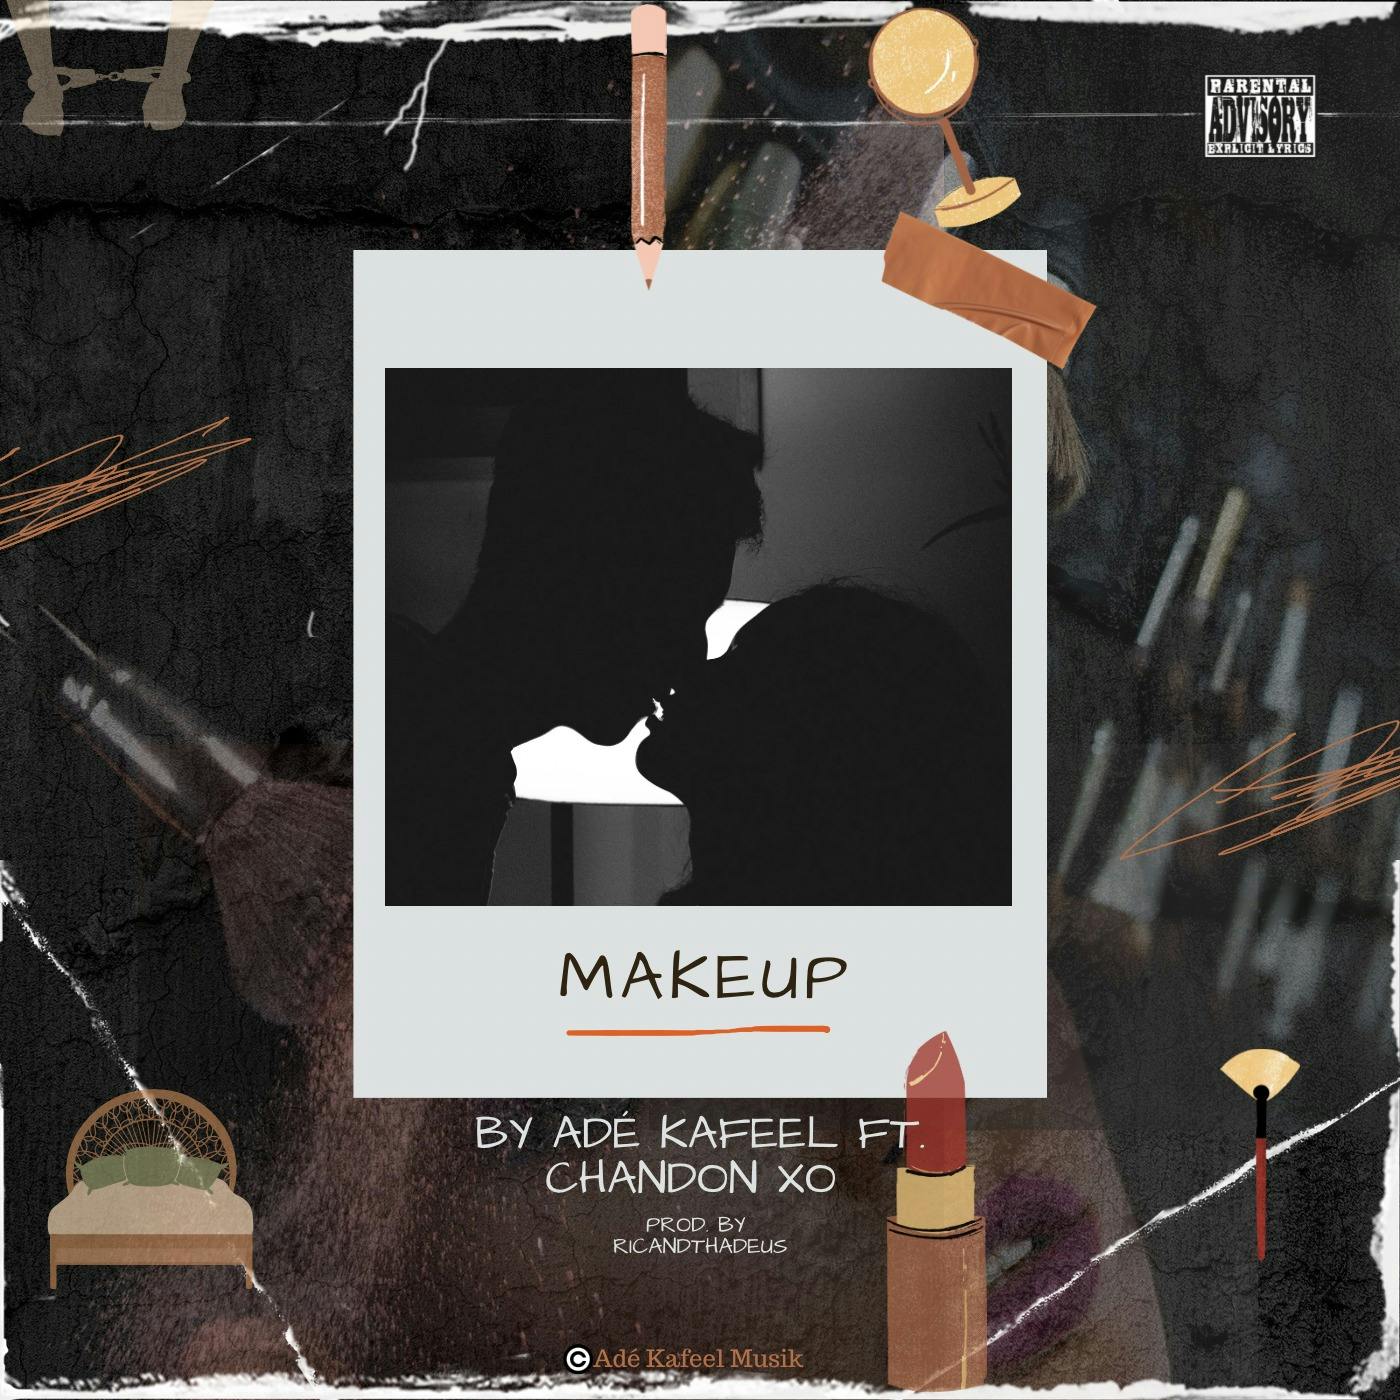 MakeUp (Ade Kafeel ft. Chandon XO)